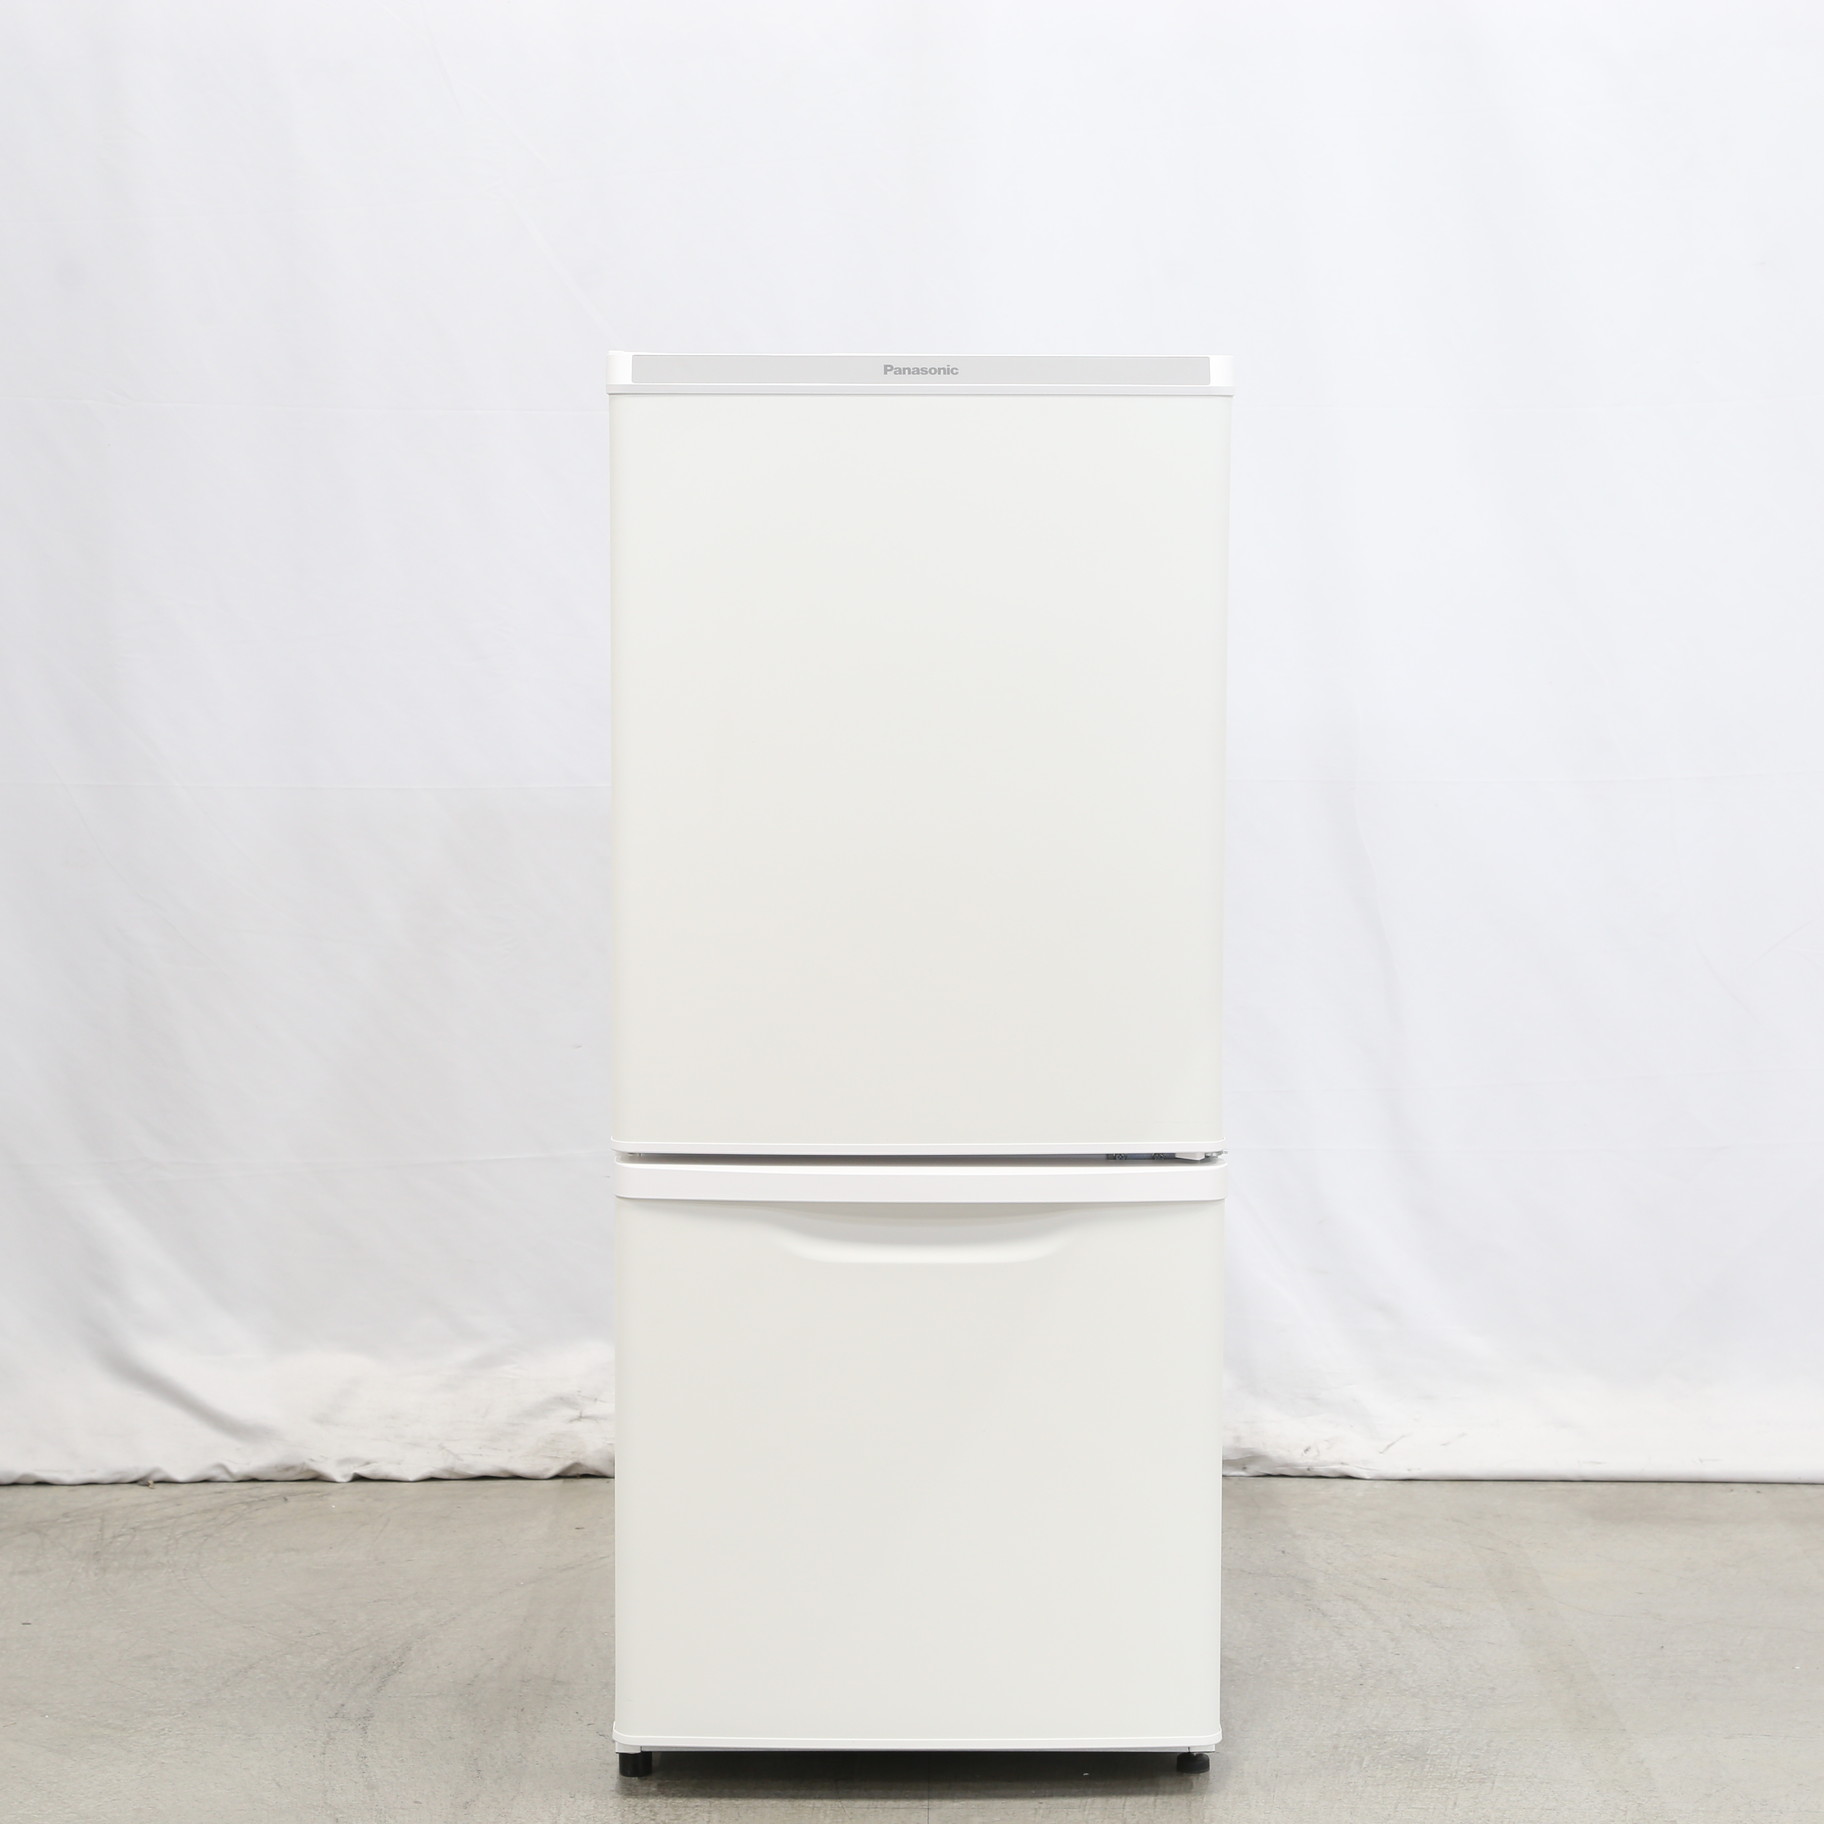 Panasonic 冷凍冷蔵庫 2ドア NR-B14DW-W ホワイト 白-